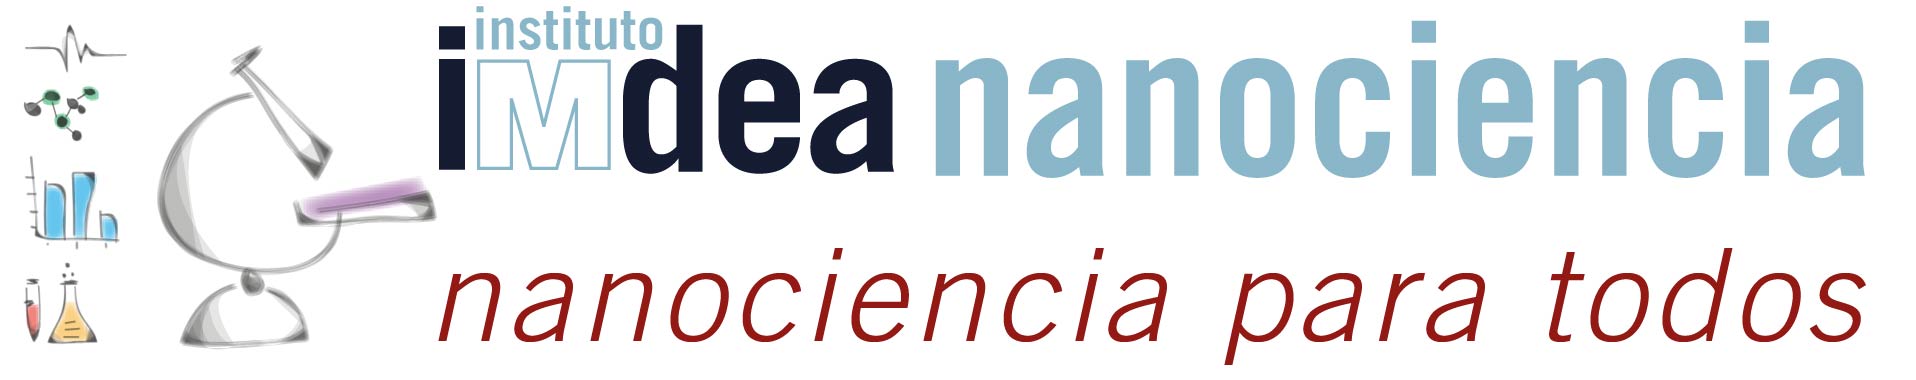 Logo Nanociencia para todos v3 01